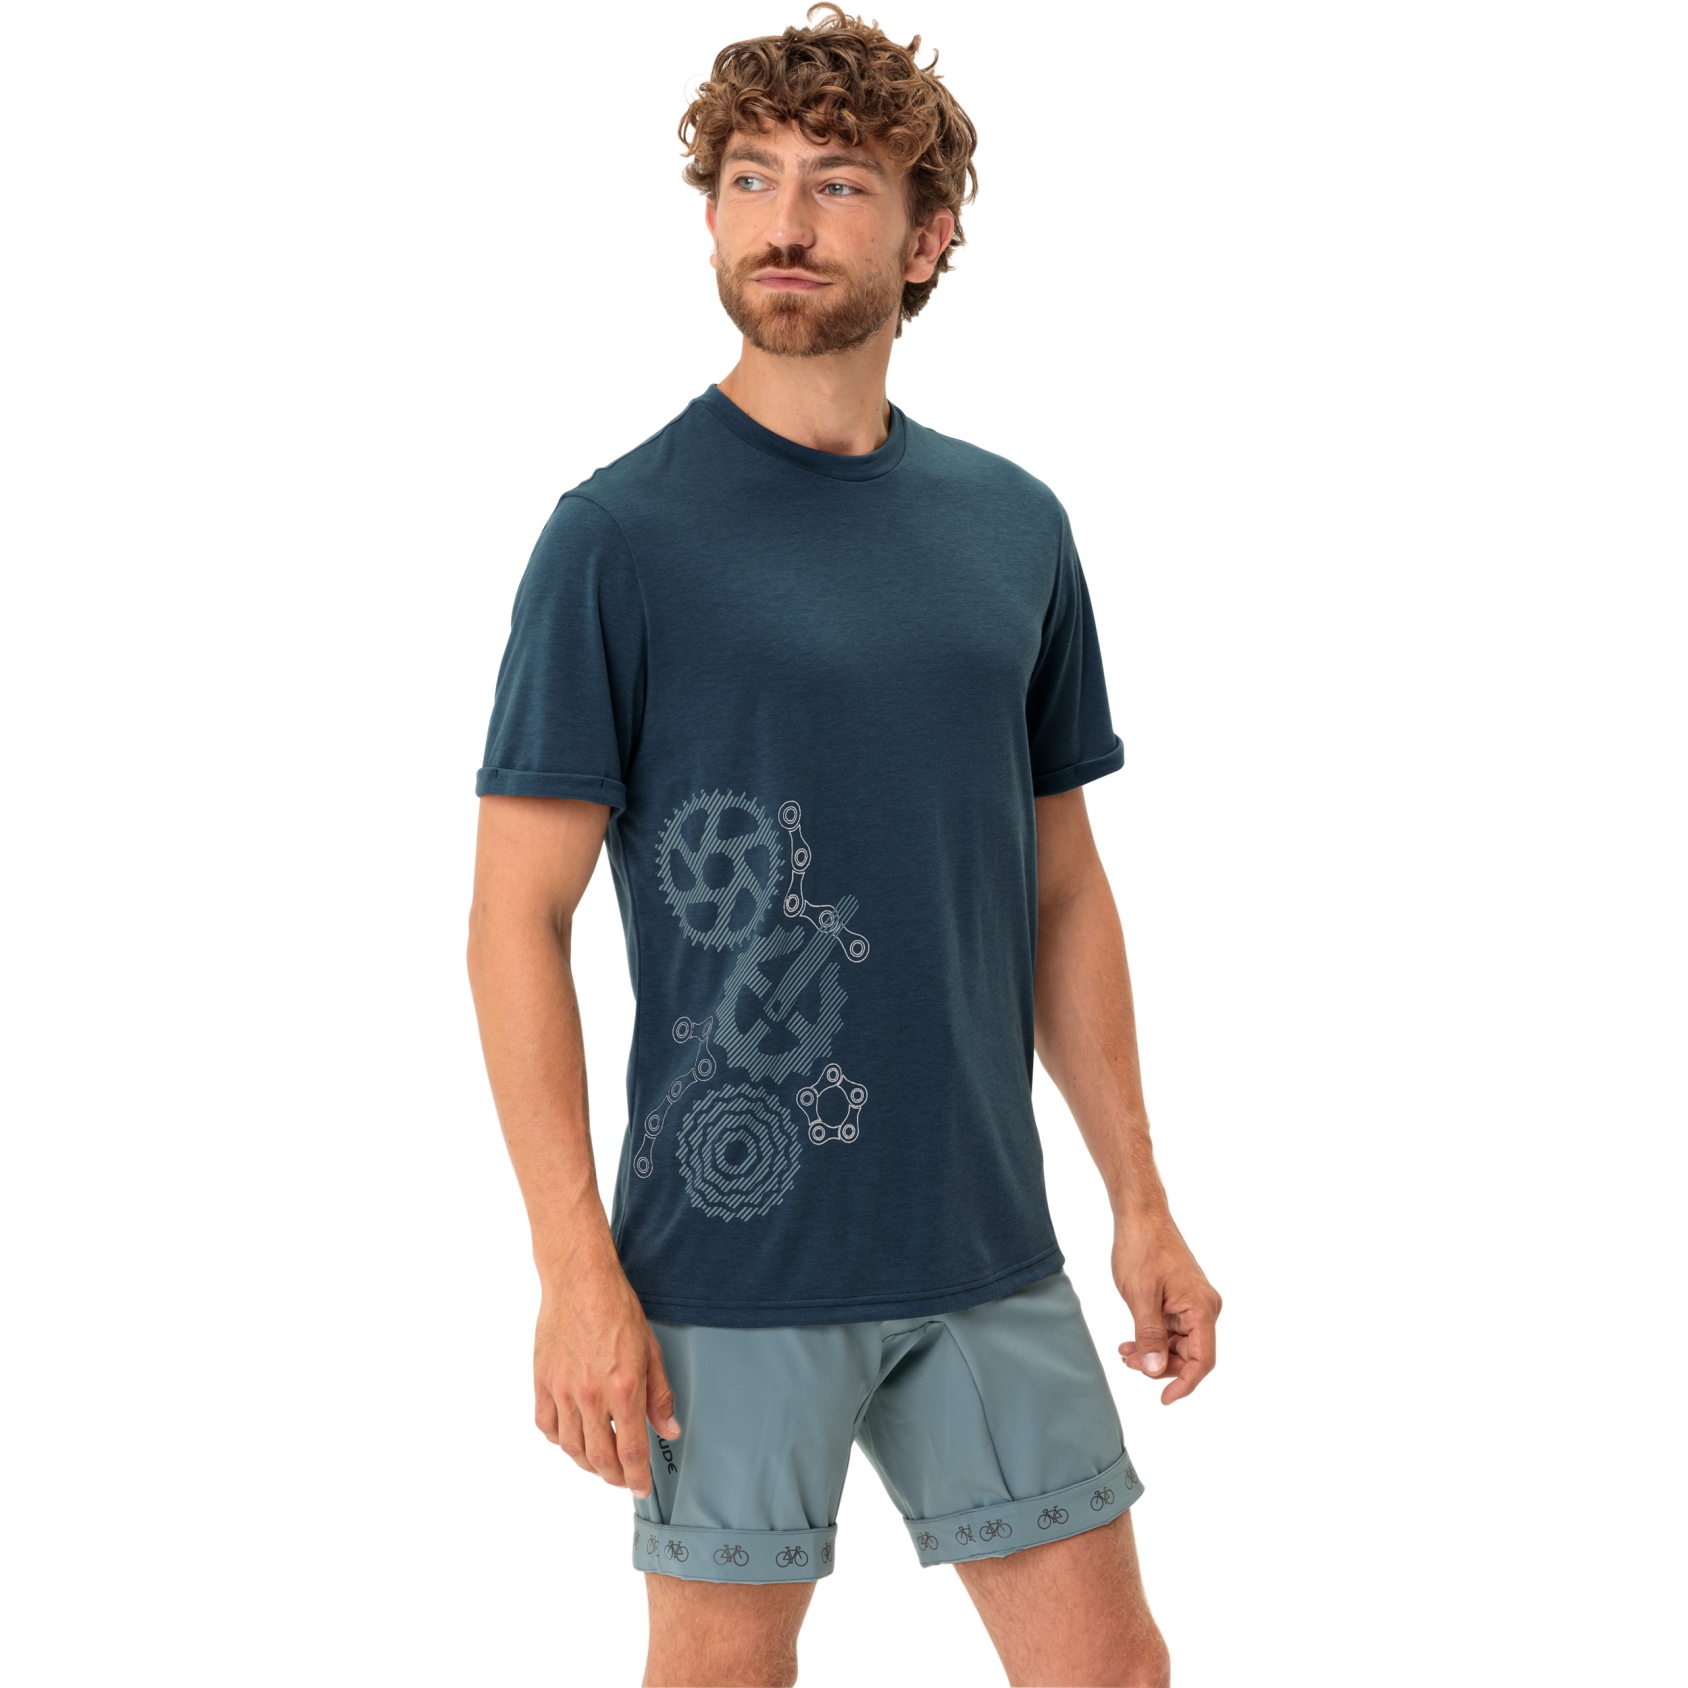 Produktbild von Vaude Cyclist 3 T-Shirt Herren - dark sea